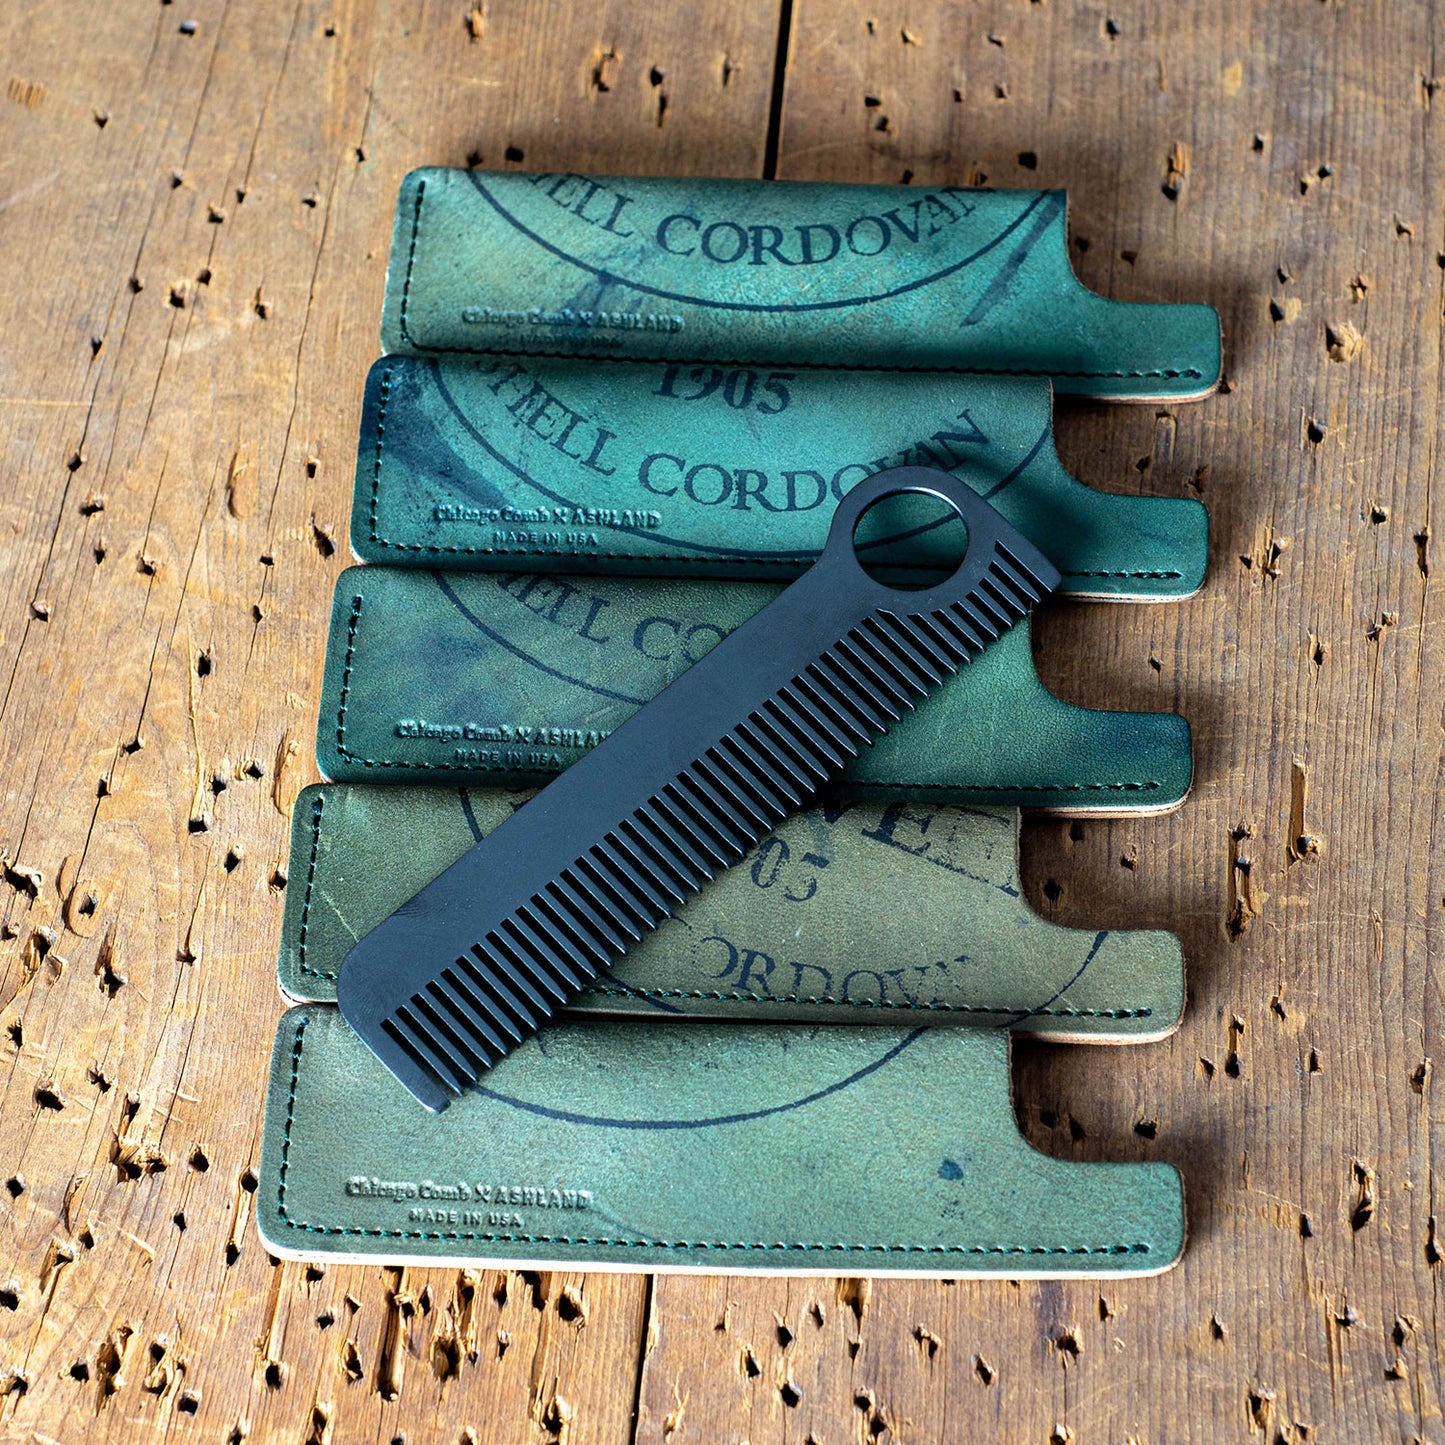 leather comb sheath